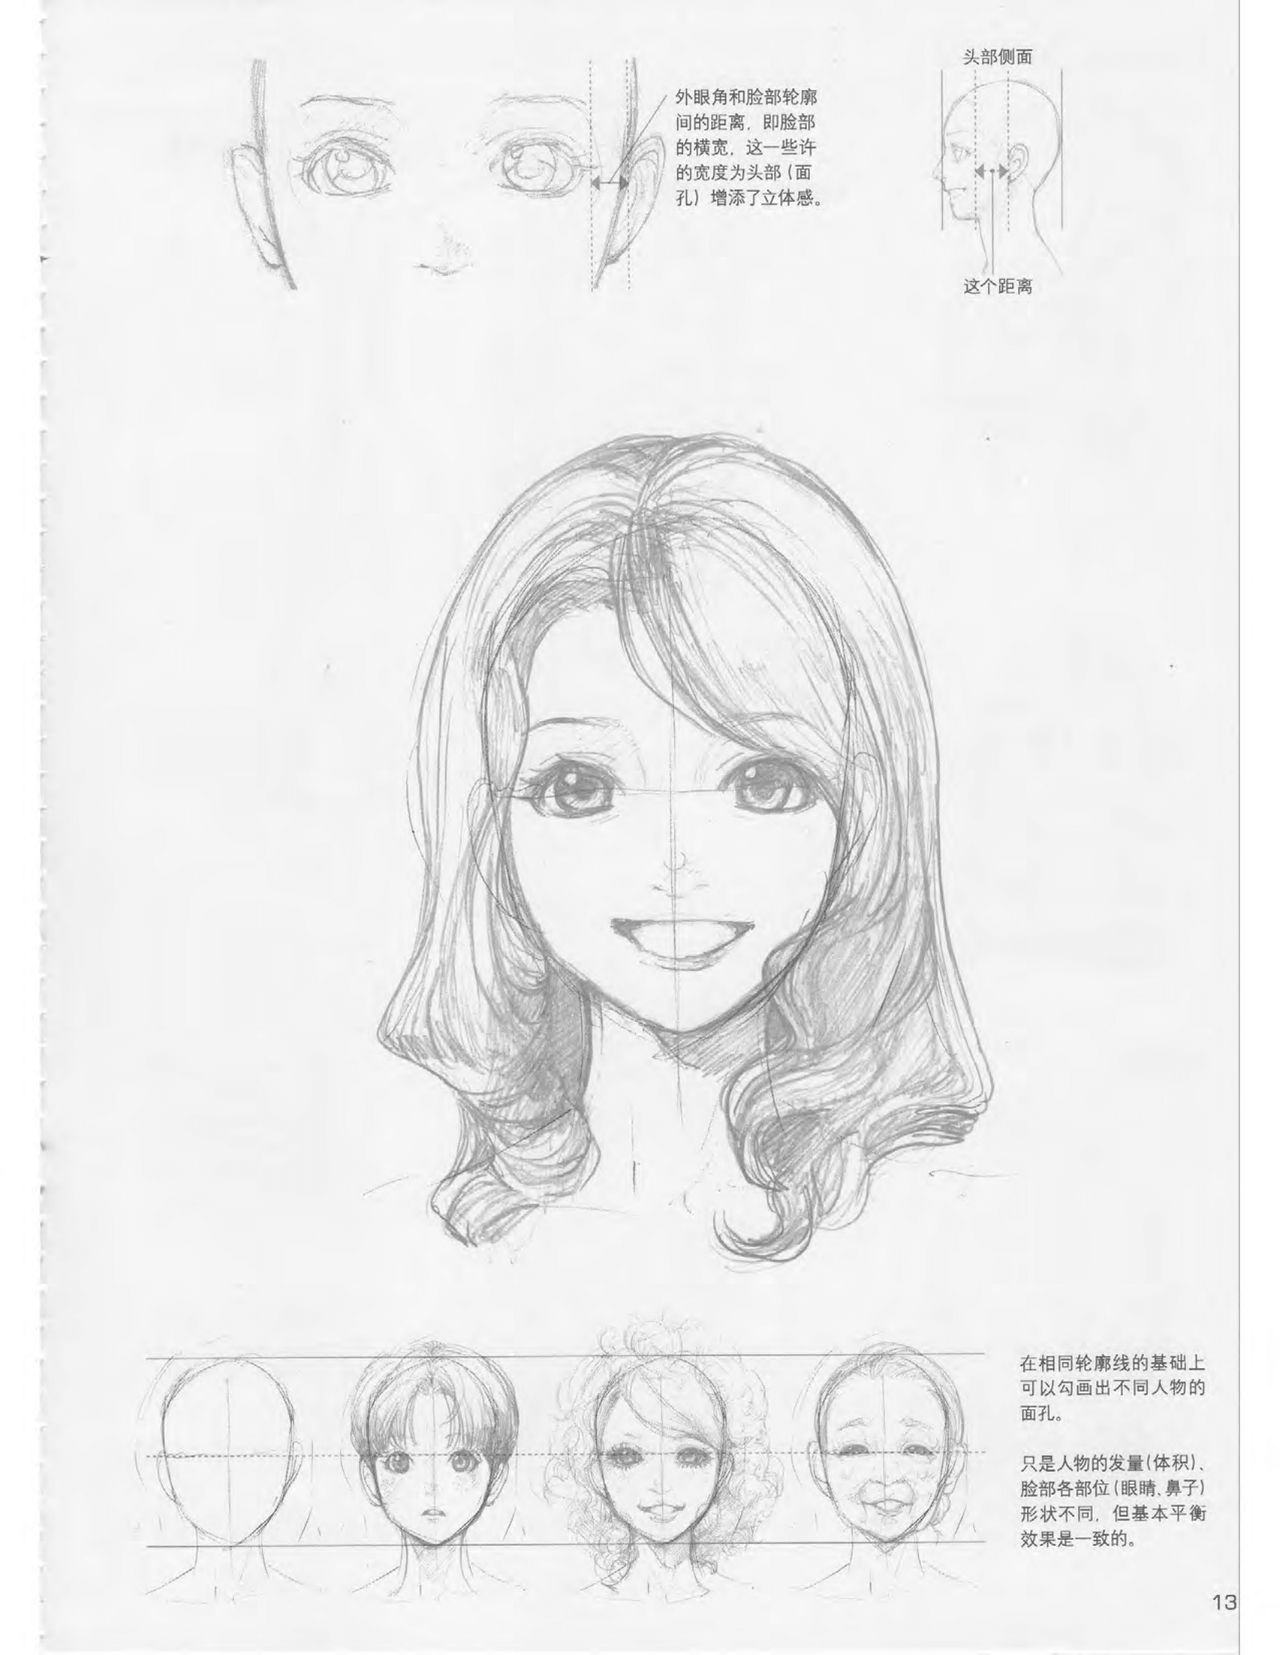 Japanese Manga Master Lecture 3: Lin Akira and Kakumaru Maru Talk About Glamorous Character Modeling 13